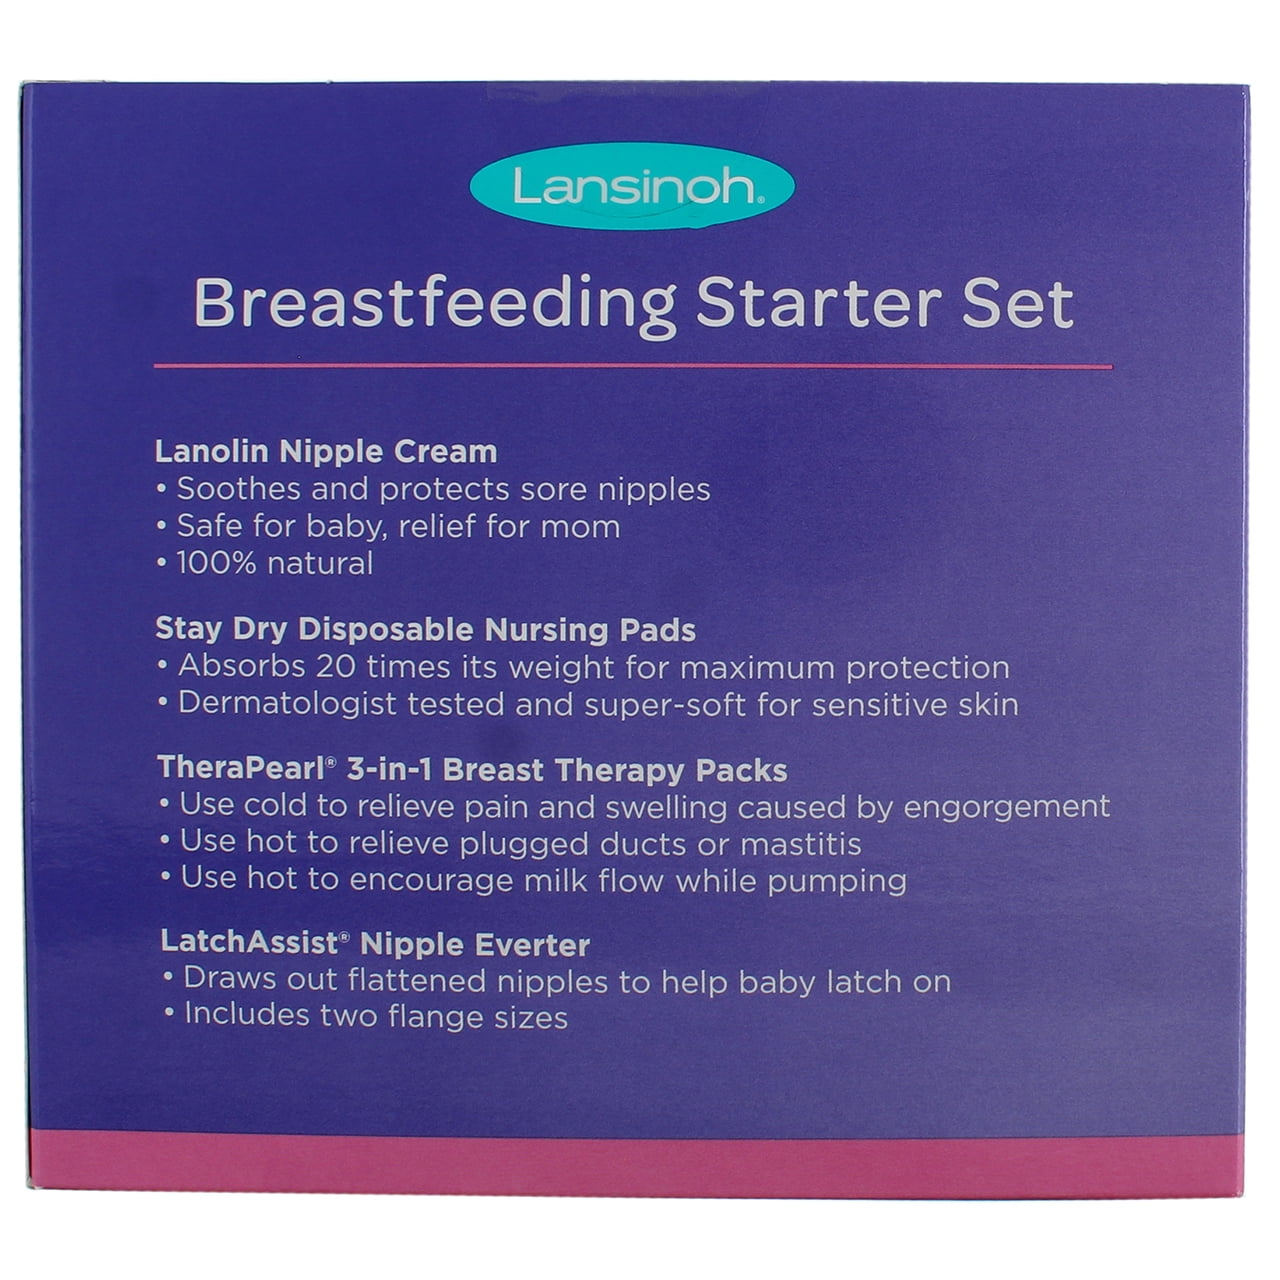 Lansinoh Breastfeeding Starter Set For Nursing